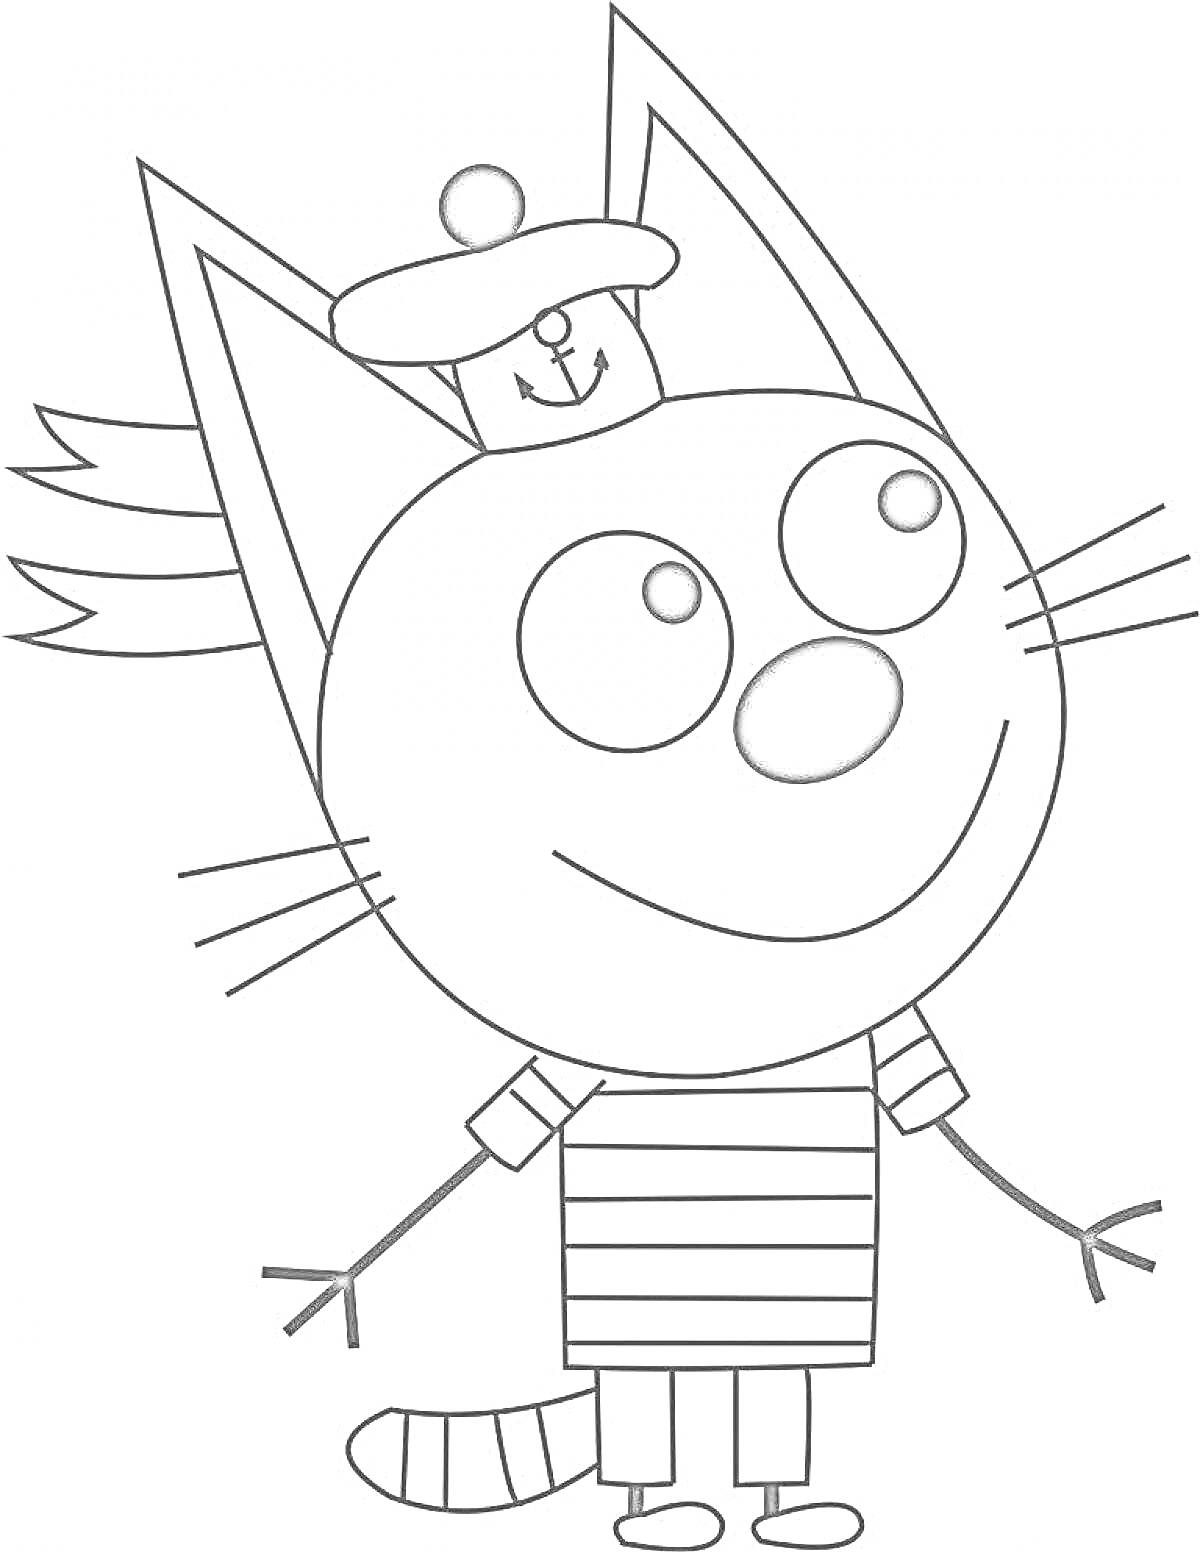 Раскраска Кот с полосатой кофточкой, шапкой с помпоном и улыбающимся выражением лица